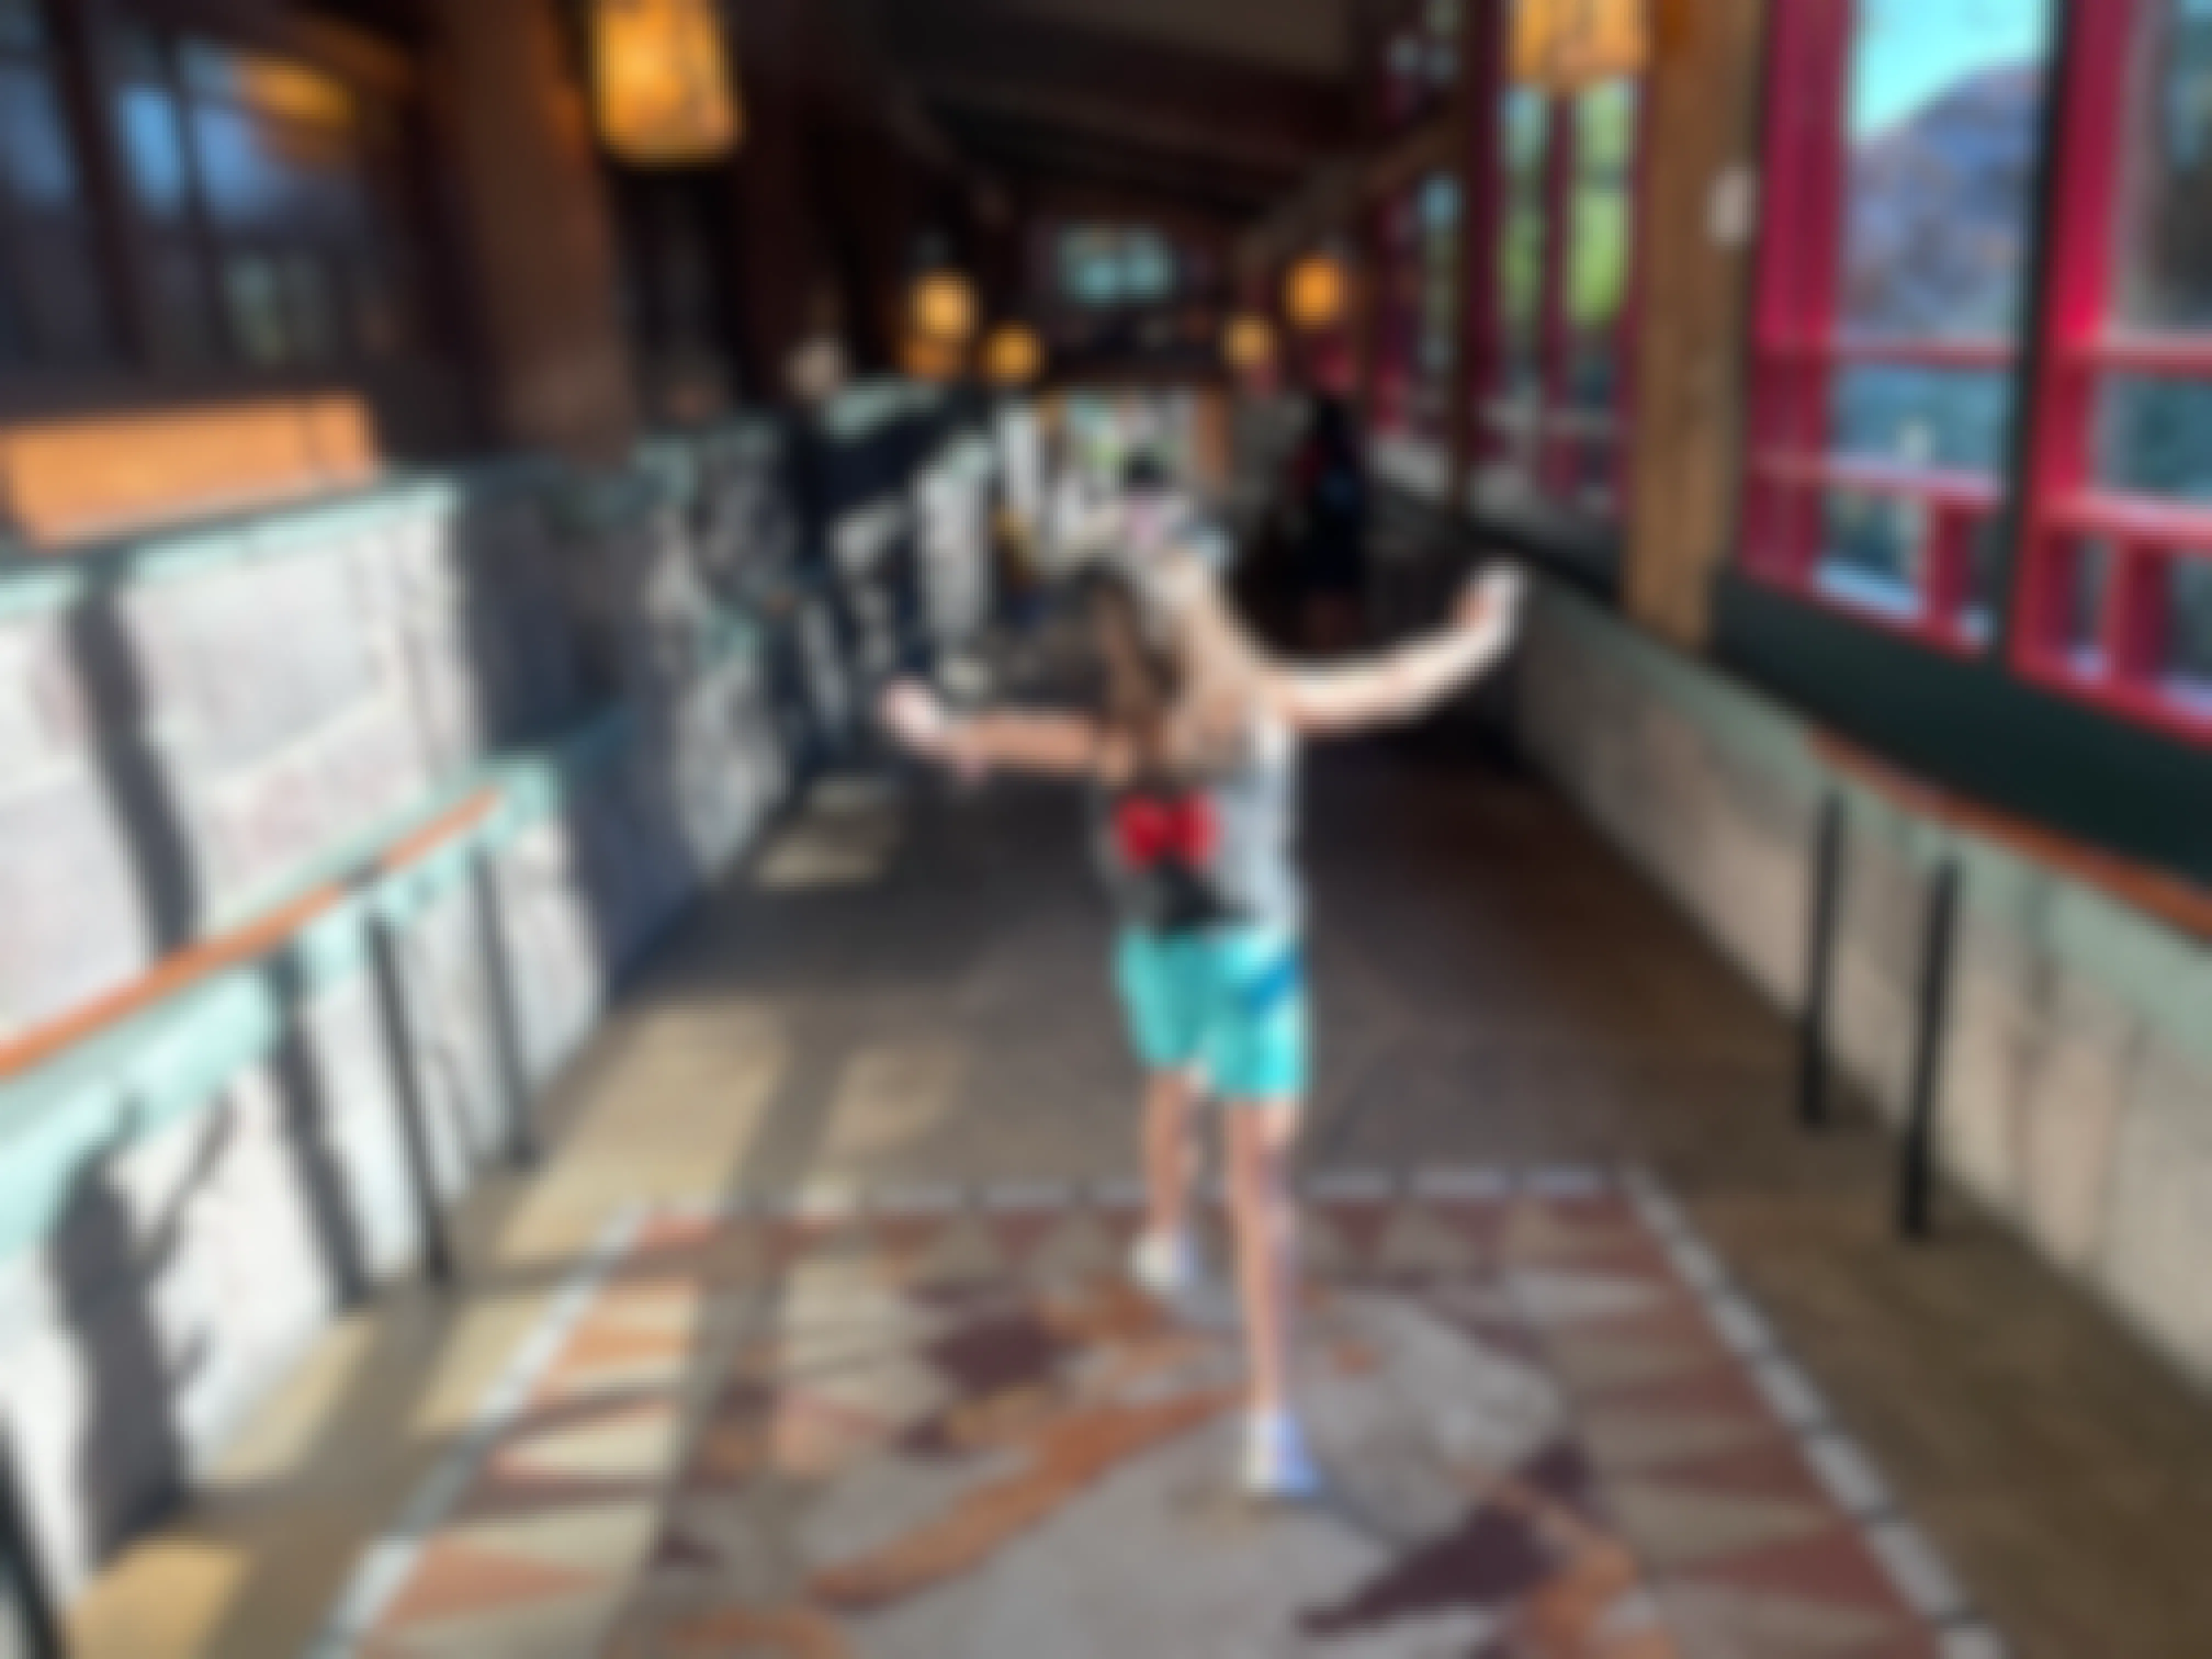 Girl walking in a hallway at a Disney resort hotel